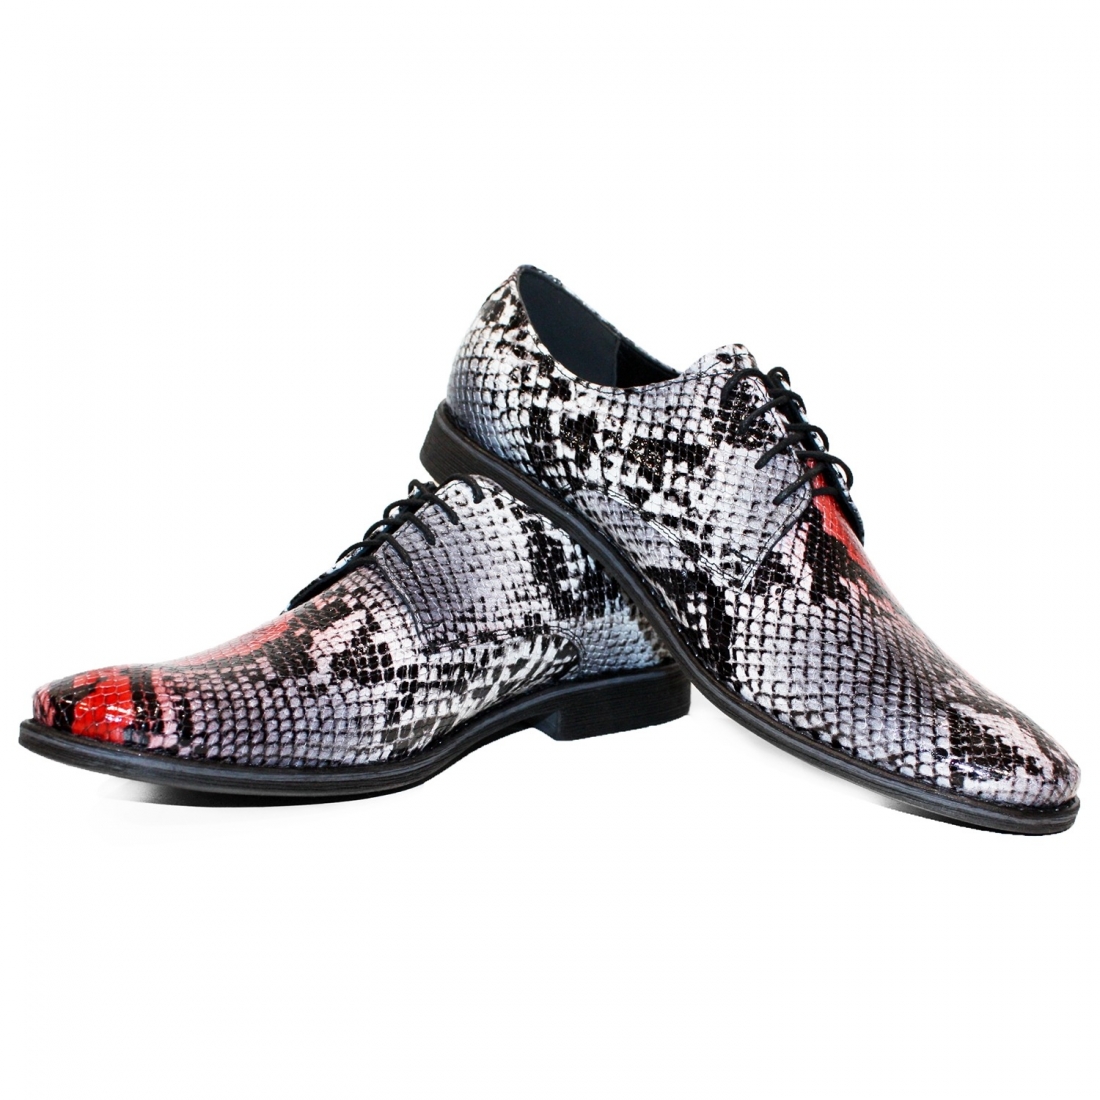 Modello Nobello - Chaussure Classique - Handmade Colorful Italian Leather Shoes